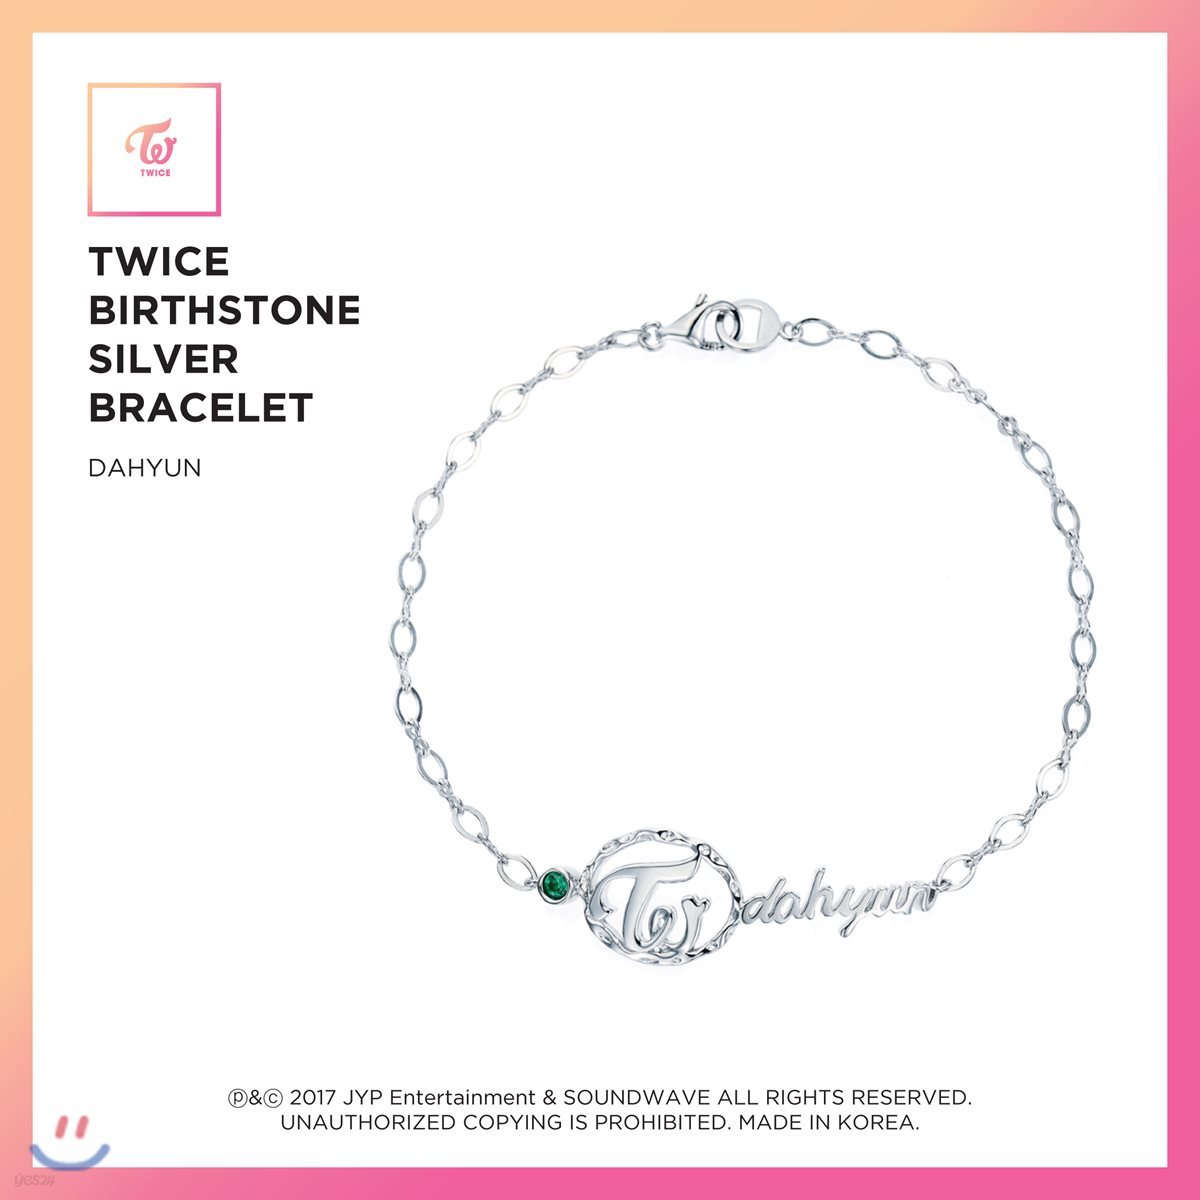 트와이스 (TWICE) - TWICE Birthstone Silver Bracelet [Dahyun]